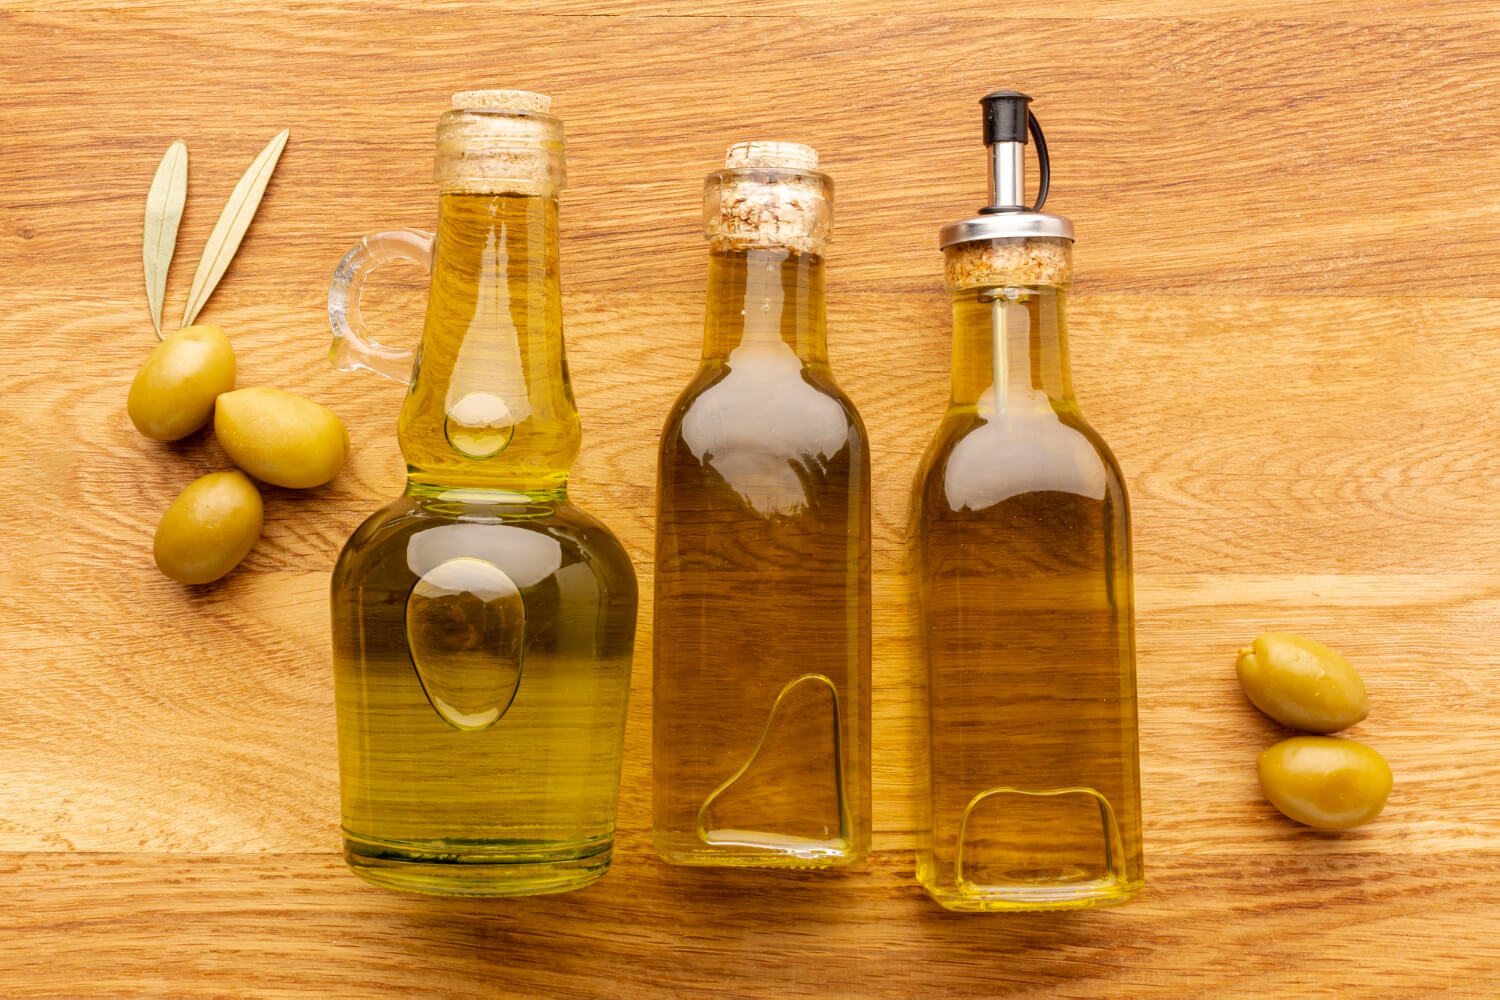 Детям можно оливковое масло. Бутылка для растительного масла. Бутылка подсолнечного масла. Бутылочка для оливкового масла. Маленькие бутылочки с оливковым маслом.